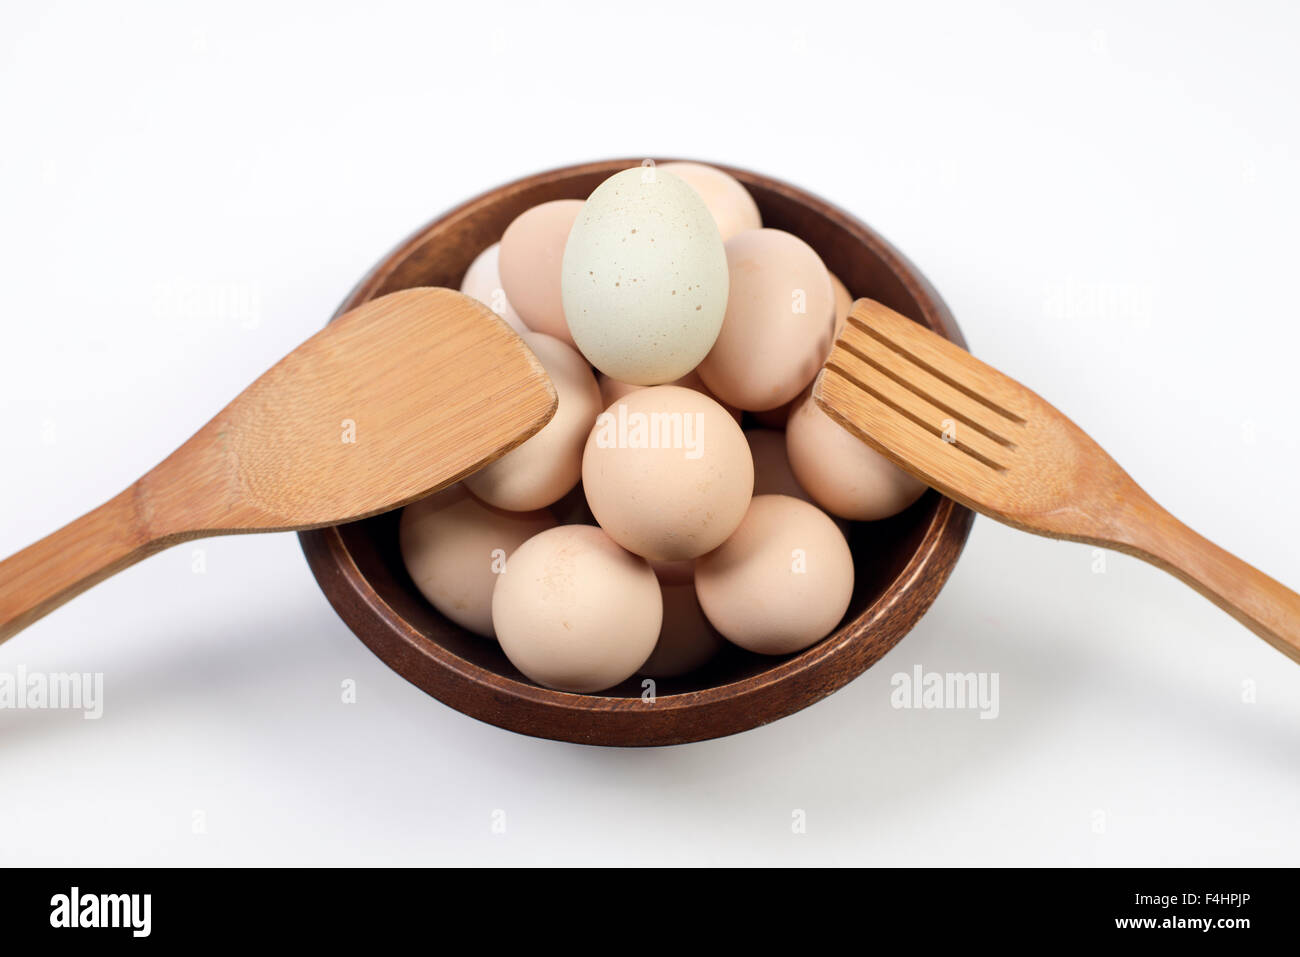 Eggs. Huevos buena salud y alimentacion. Good Food Stock Photo